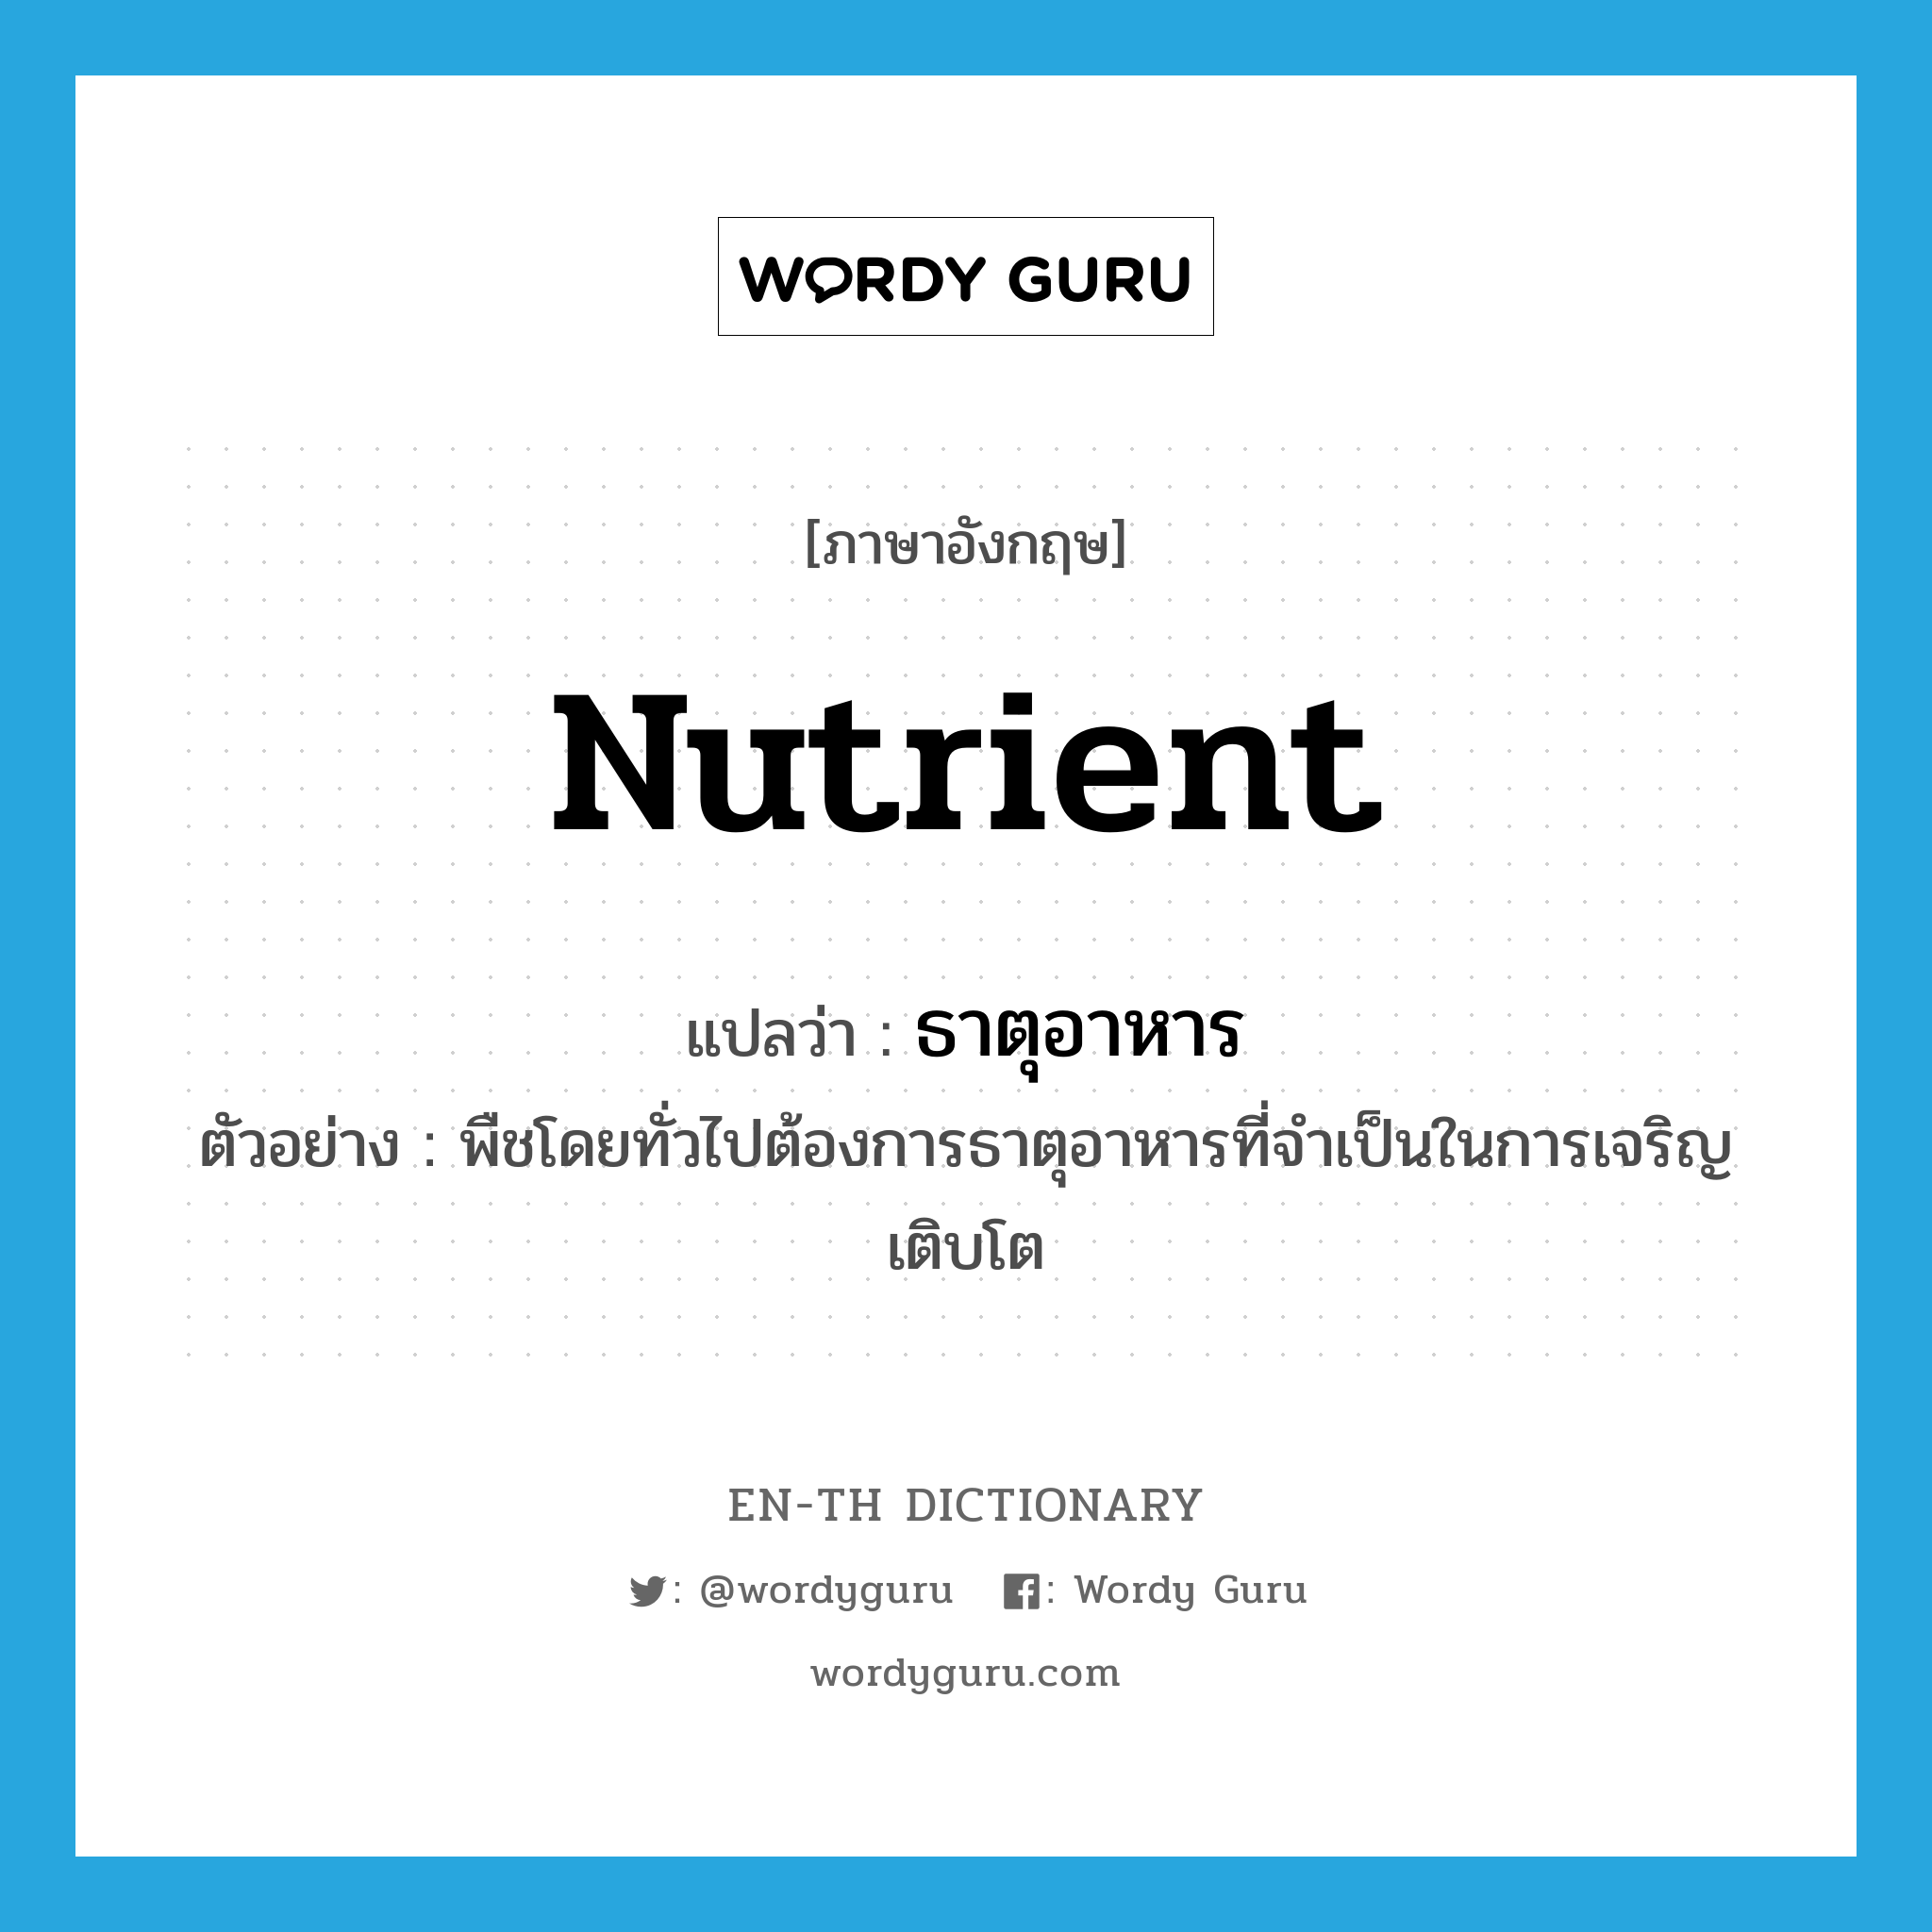 nutrient แปลว่า?, คำศัพท์ภาษาอังกฤษ nutrient แปลว่า ธาตุอาหาร ประเภท N ตัวอย่าง พืชโดยทั่วไปต้องการธาตุอาหารที่จำเป็นในการเจริญเติบโต หมวด N